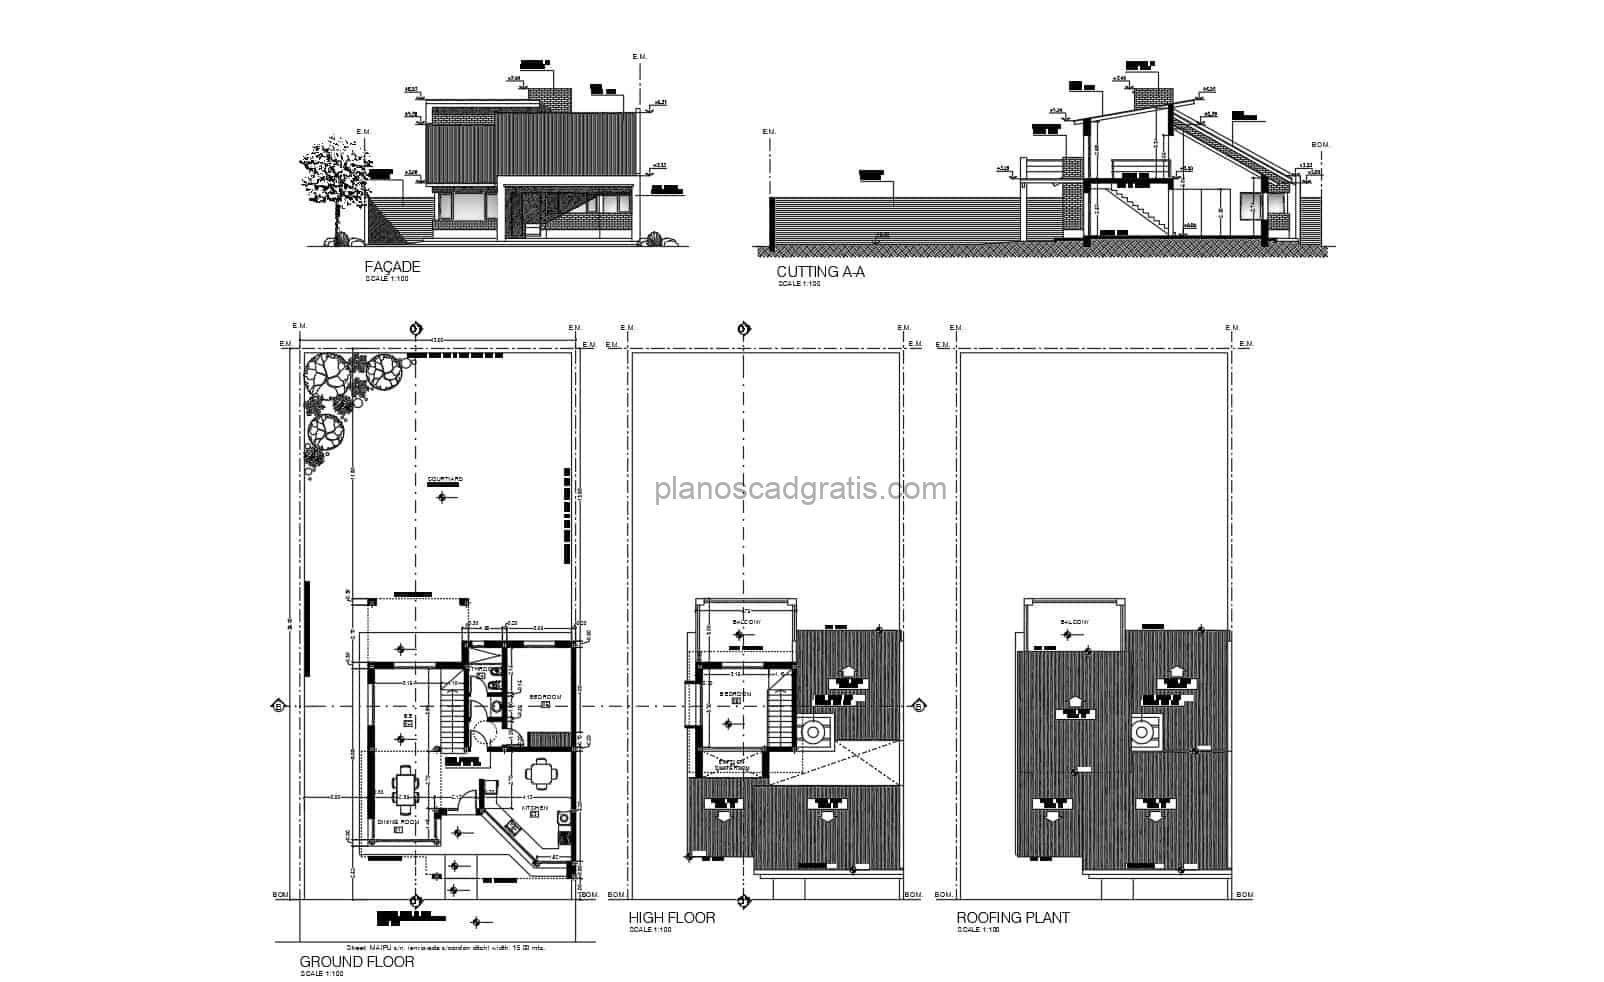 plano arquitectonico de residencia de dos niveles con dos habitaciones dibujo en formato DWG de autocad para descarga gratis, plano con dimensiones y bloques de interior de autocad, dibujo 2d de casa simple de hormigon